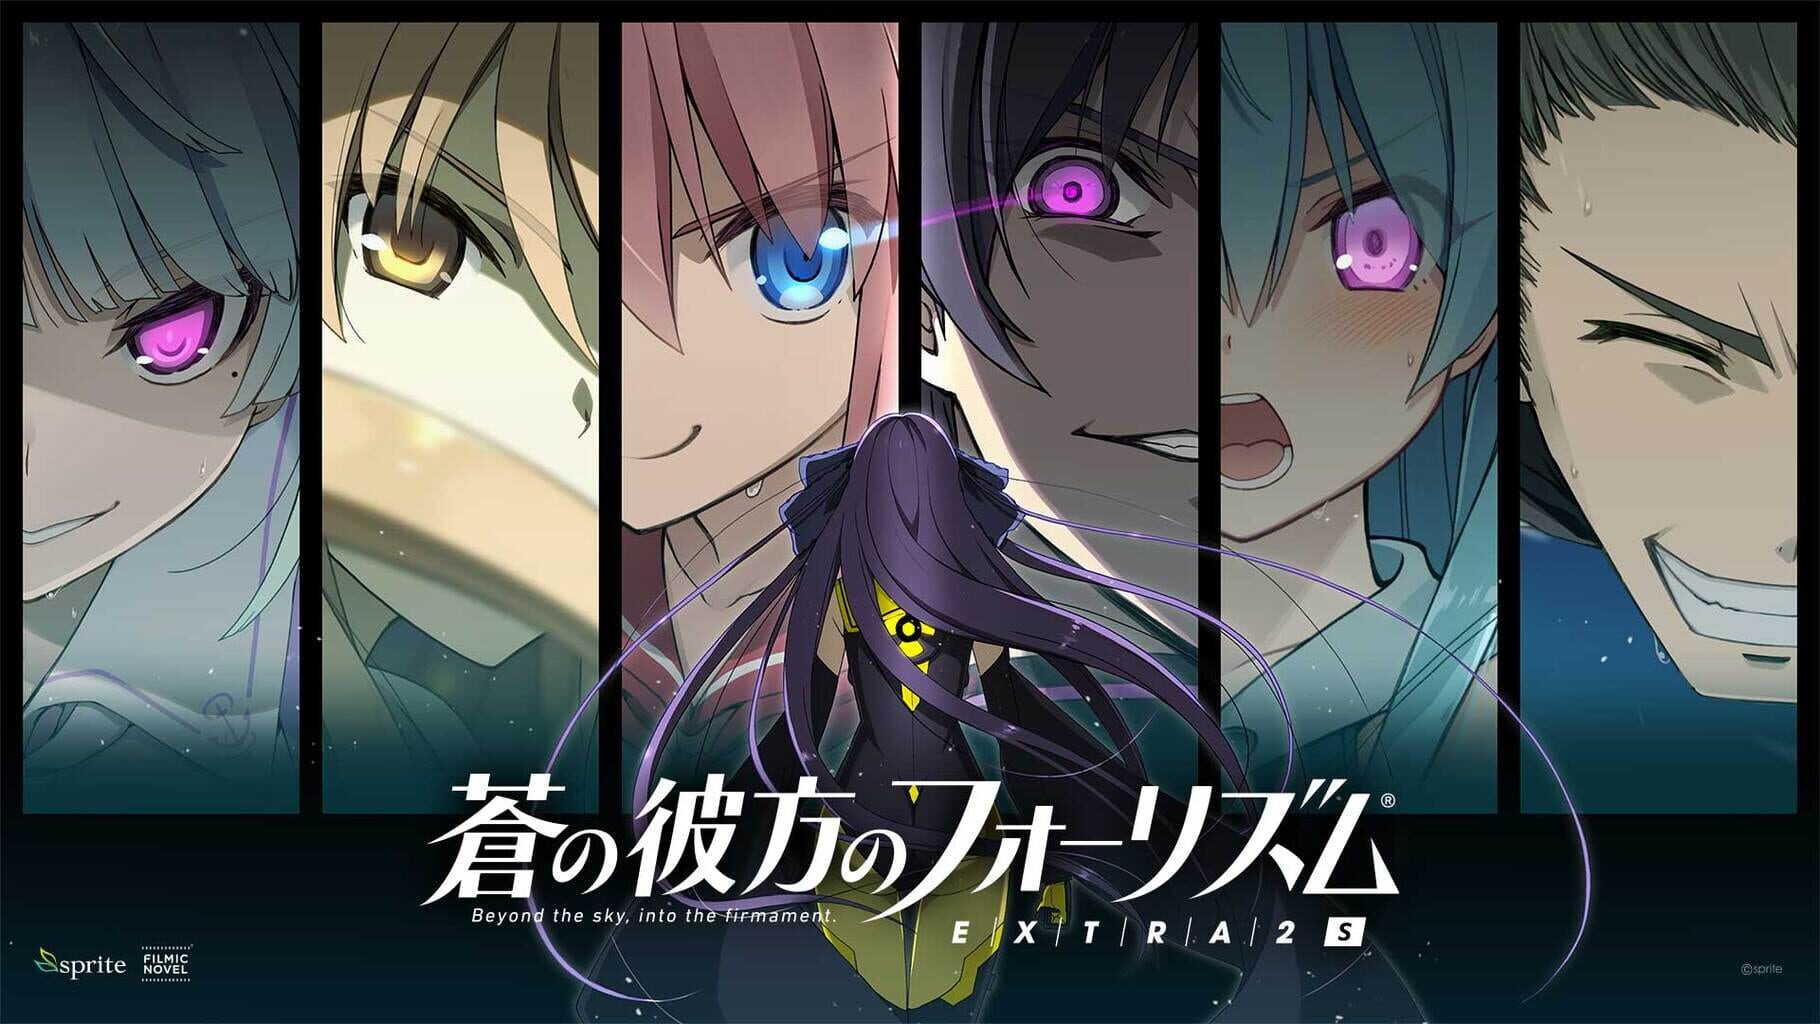 Aokana: Four Rhythms Across the Blue Extra2S artwork